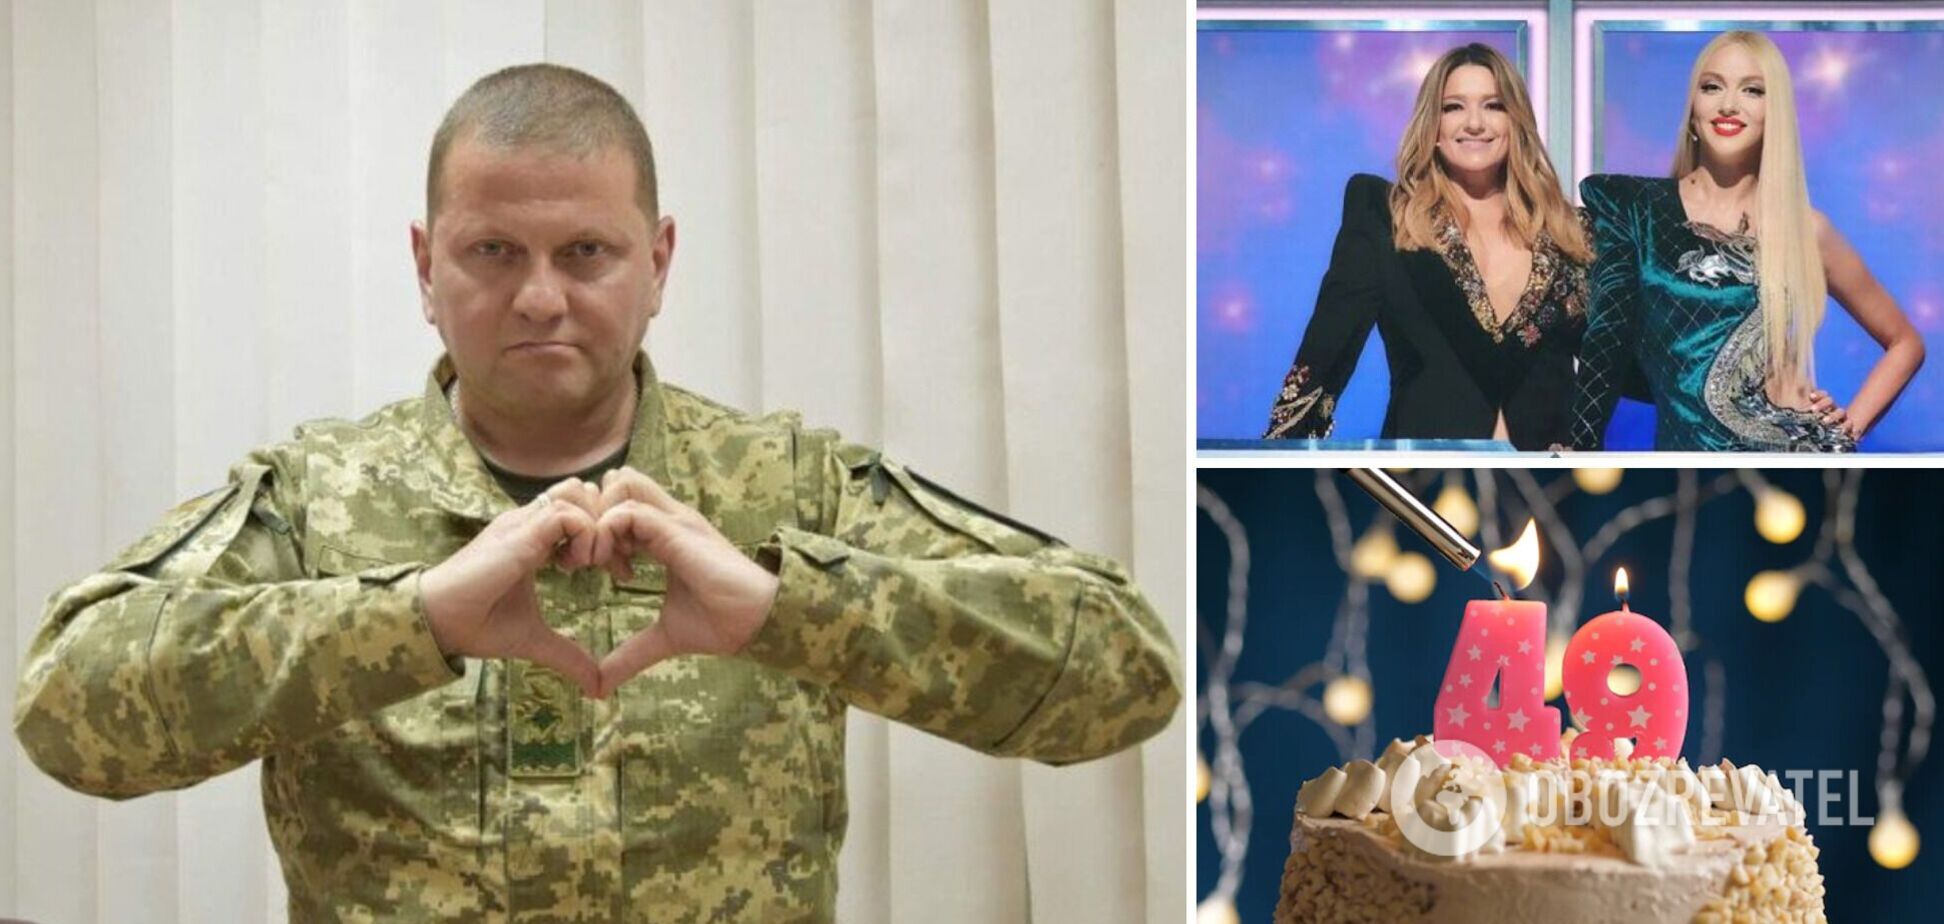 'Украина победит. Мы вам верим!' Звезды тепло обратились к 'железному генералу' Валерию Залужному в его день рождения